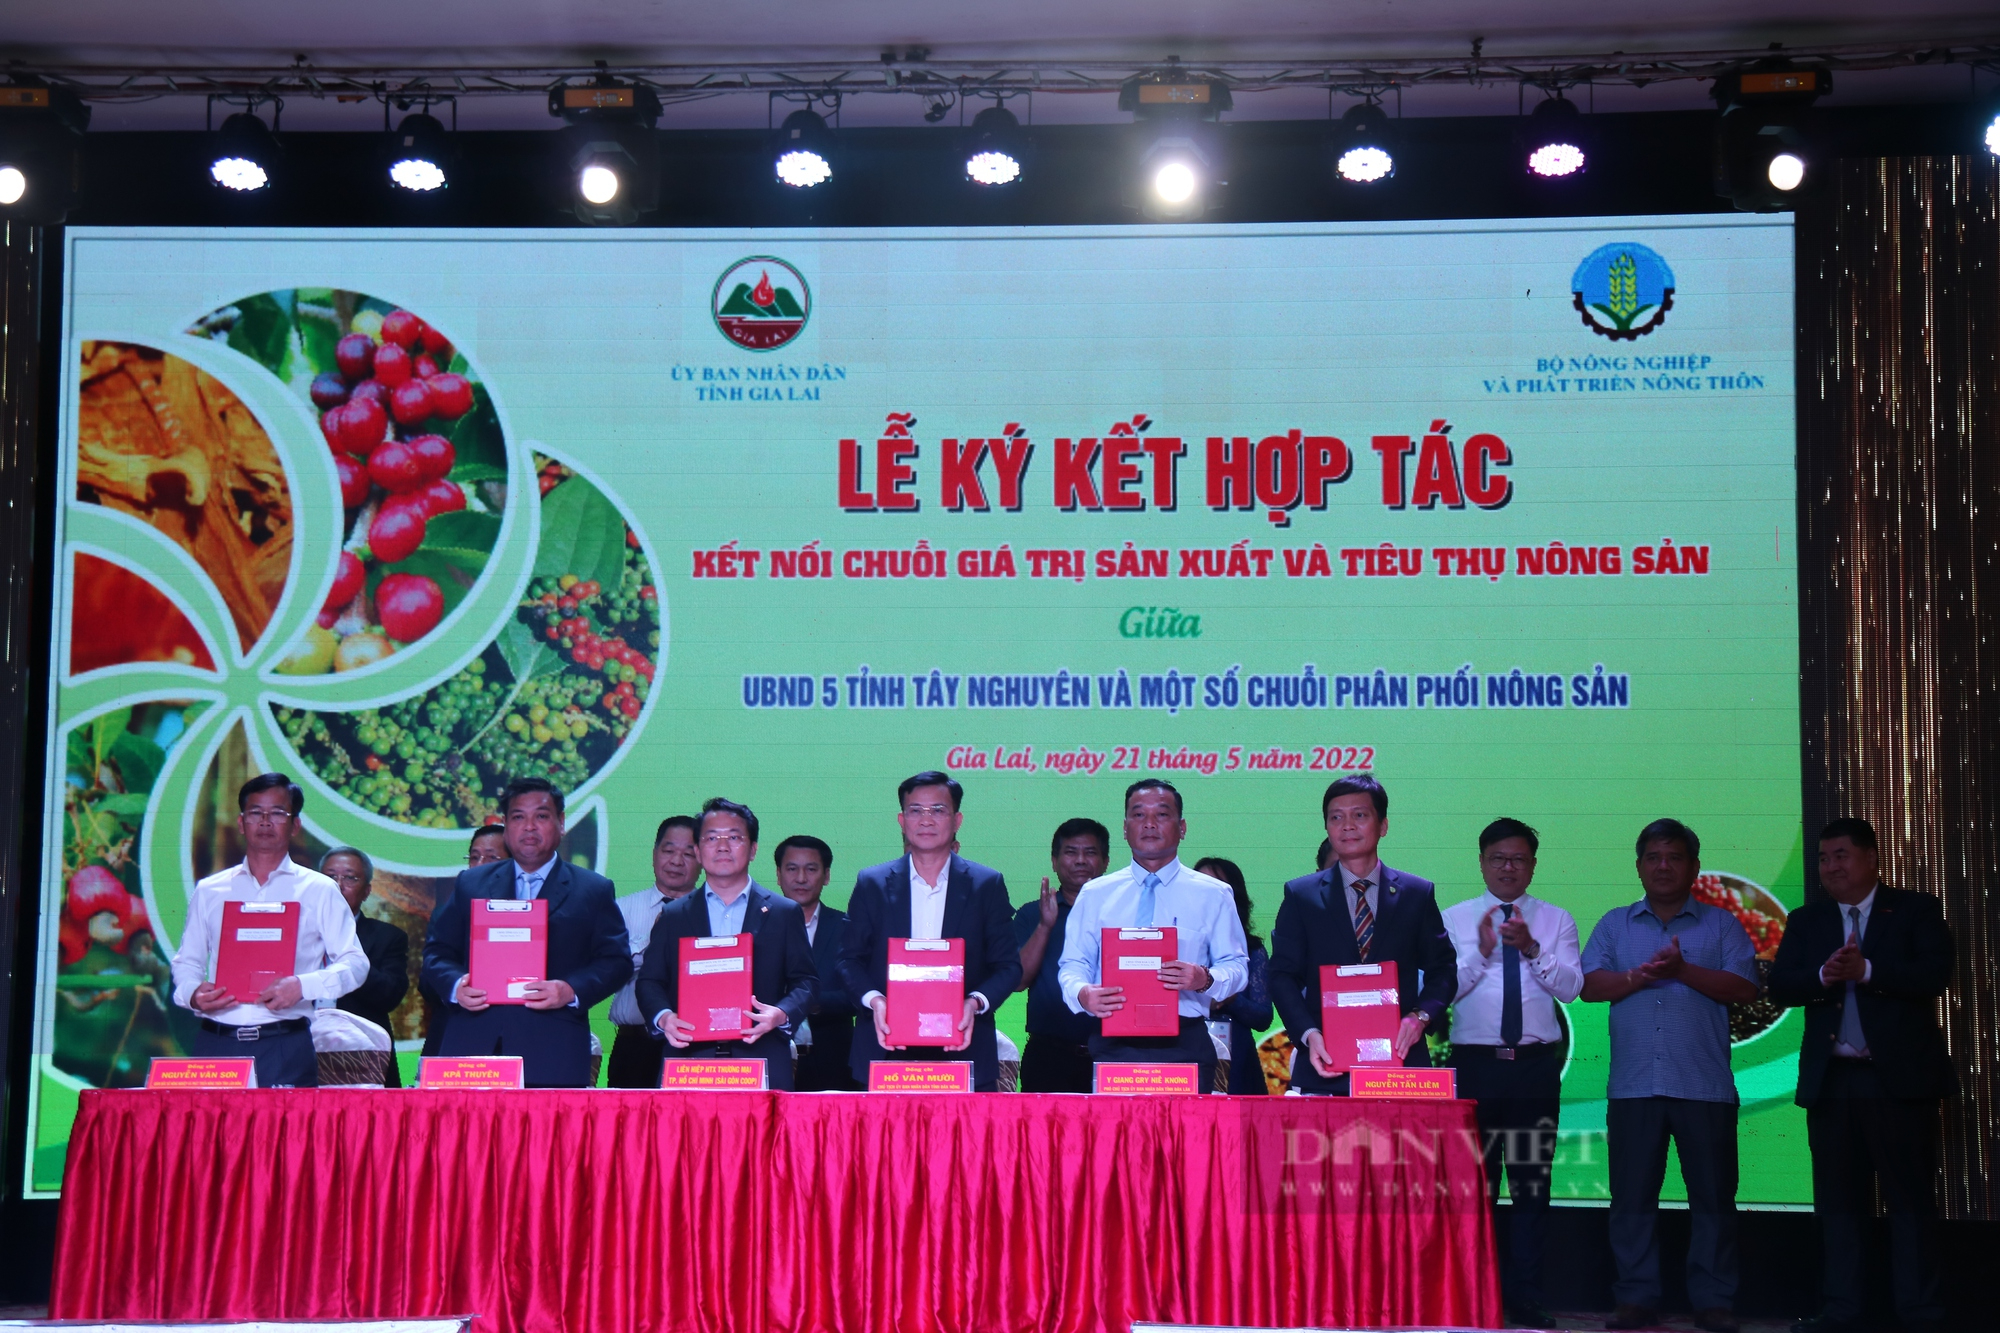 Bộ NN&PTNT sẽ hỗ trợ doanh nghiệp tạo ra chuỗi giá trị liên kết từ sản xuất tiêu thụ đến nông sản - Ảnh 3.